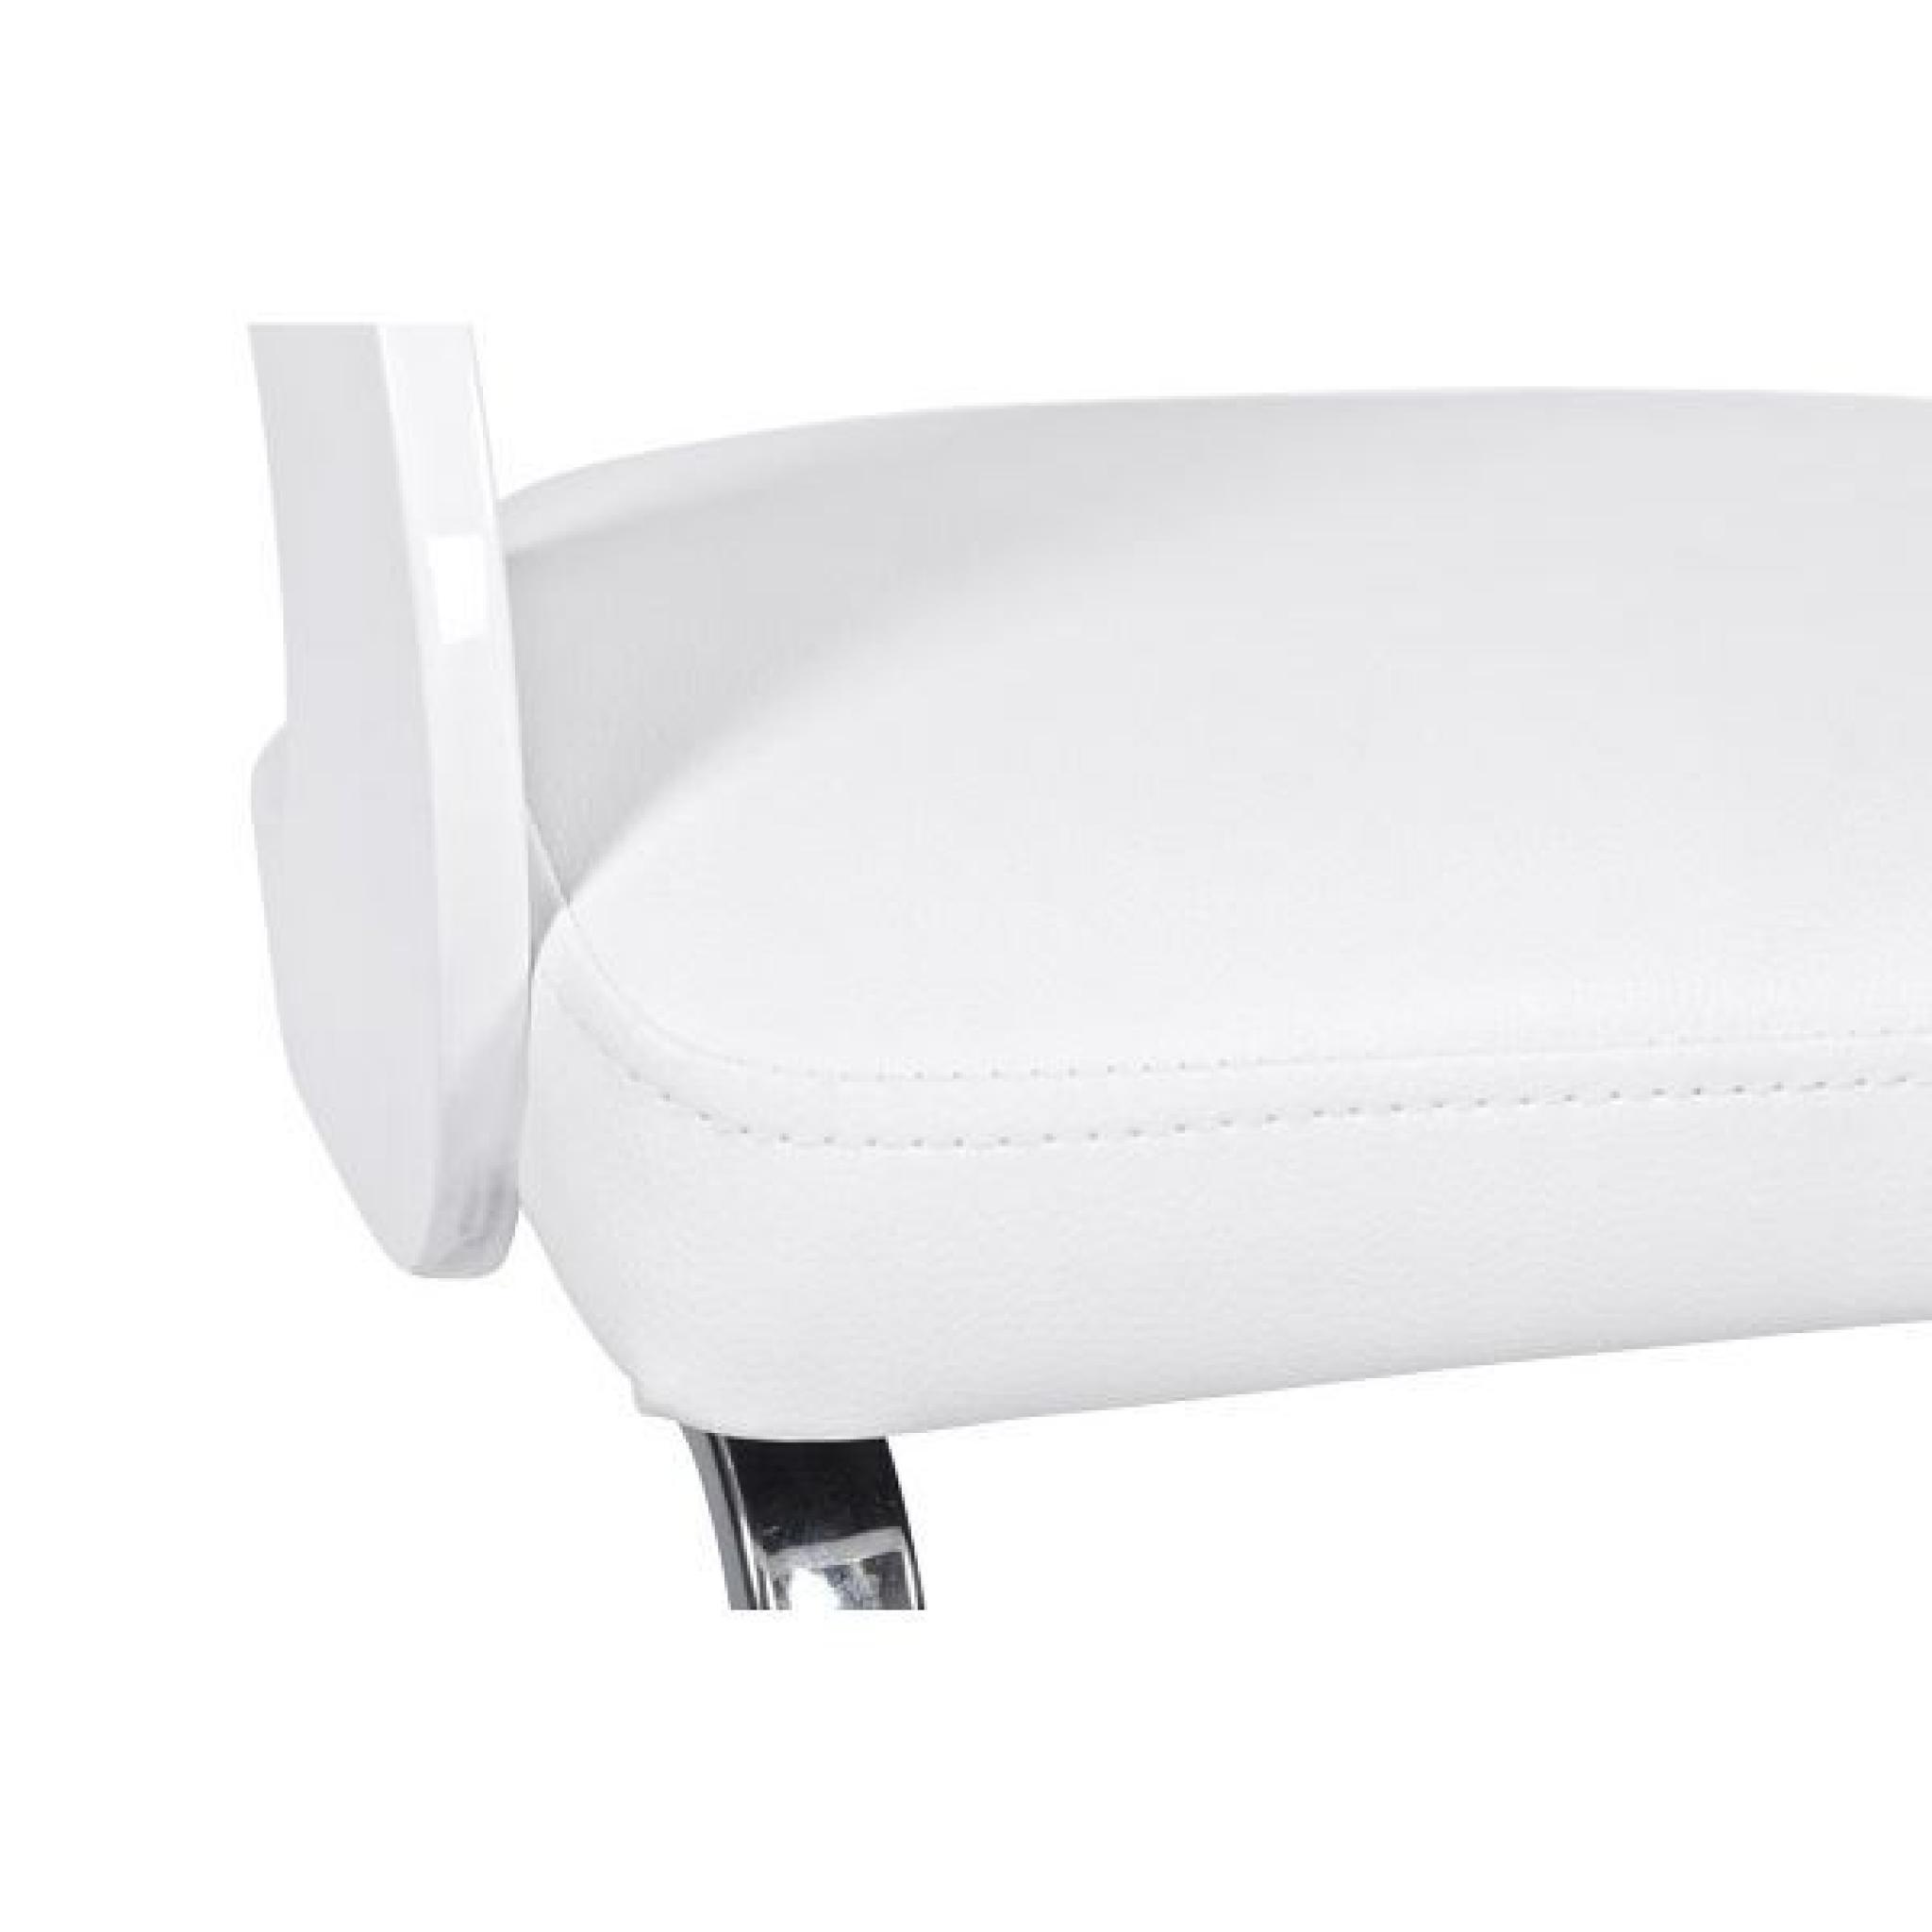 Chaise design Sembi - Blanc Lot de 3 pas cher